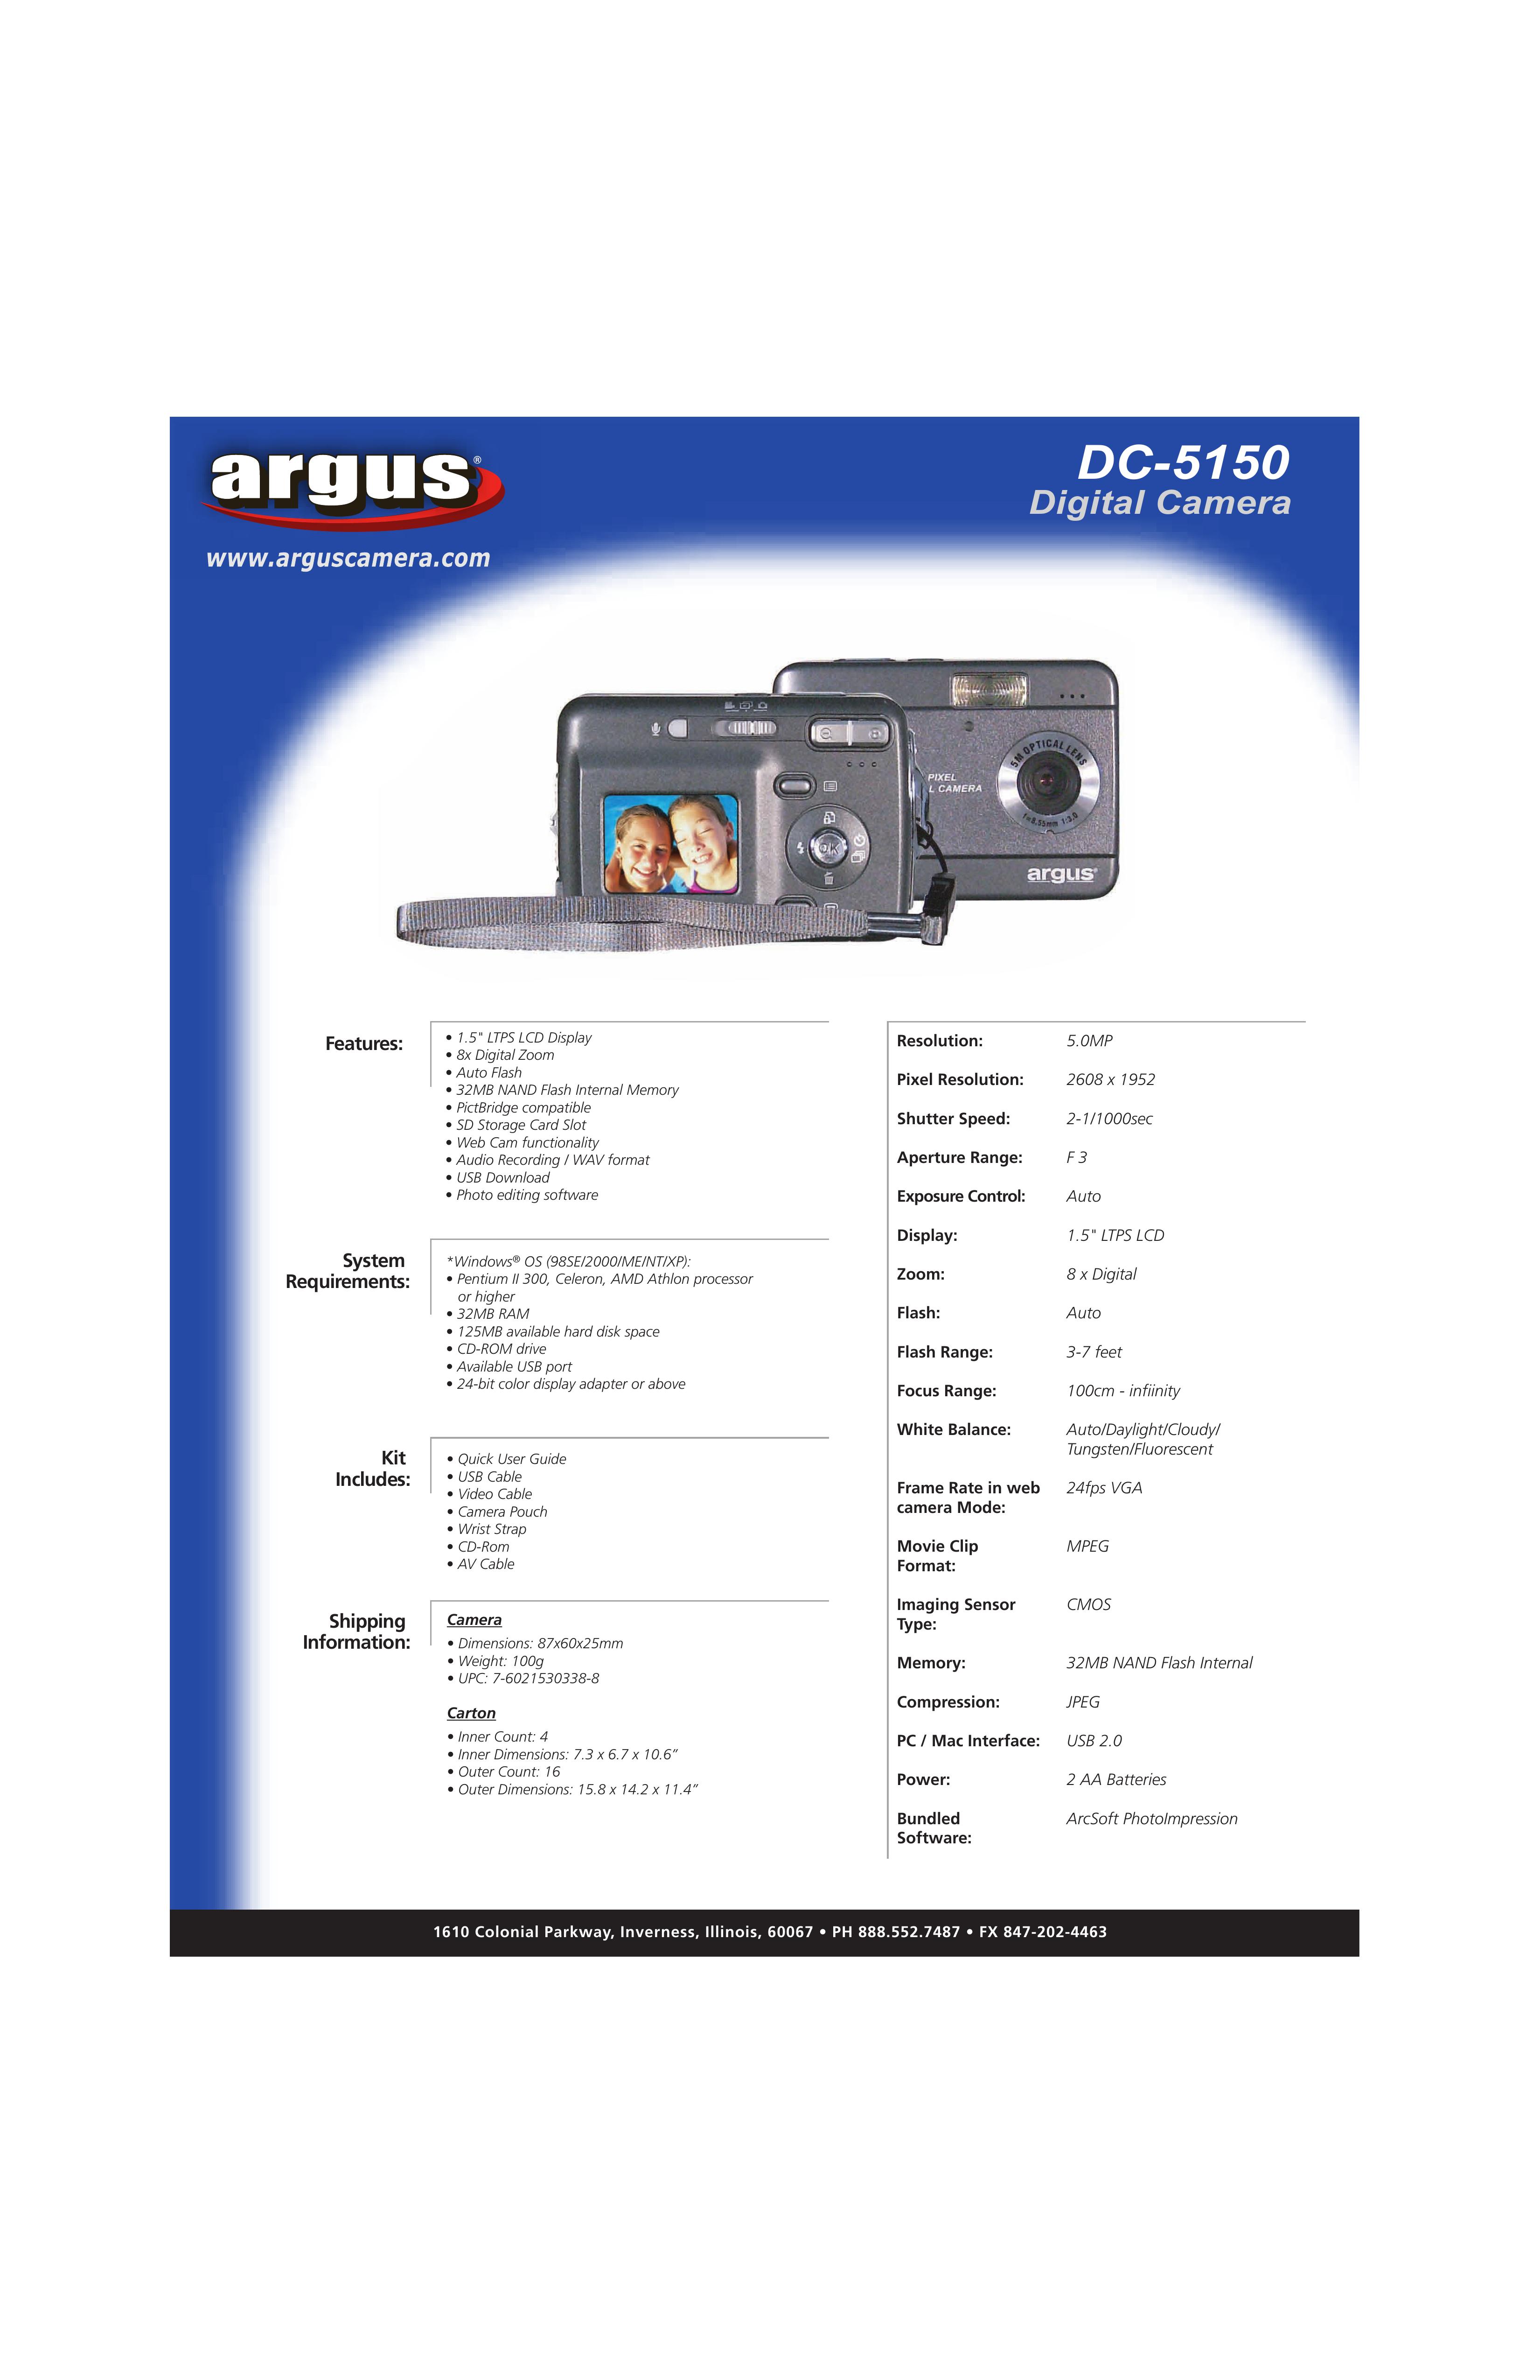 Argus Camera DC-5150 Digital Camera User Manual